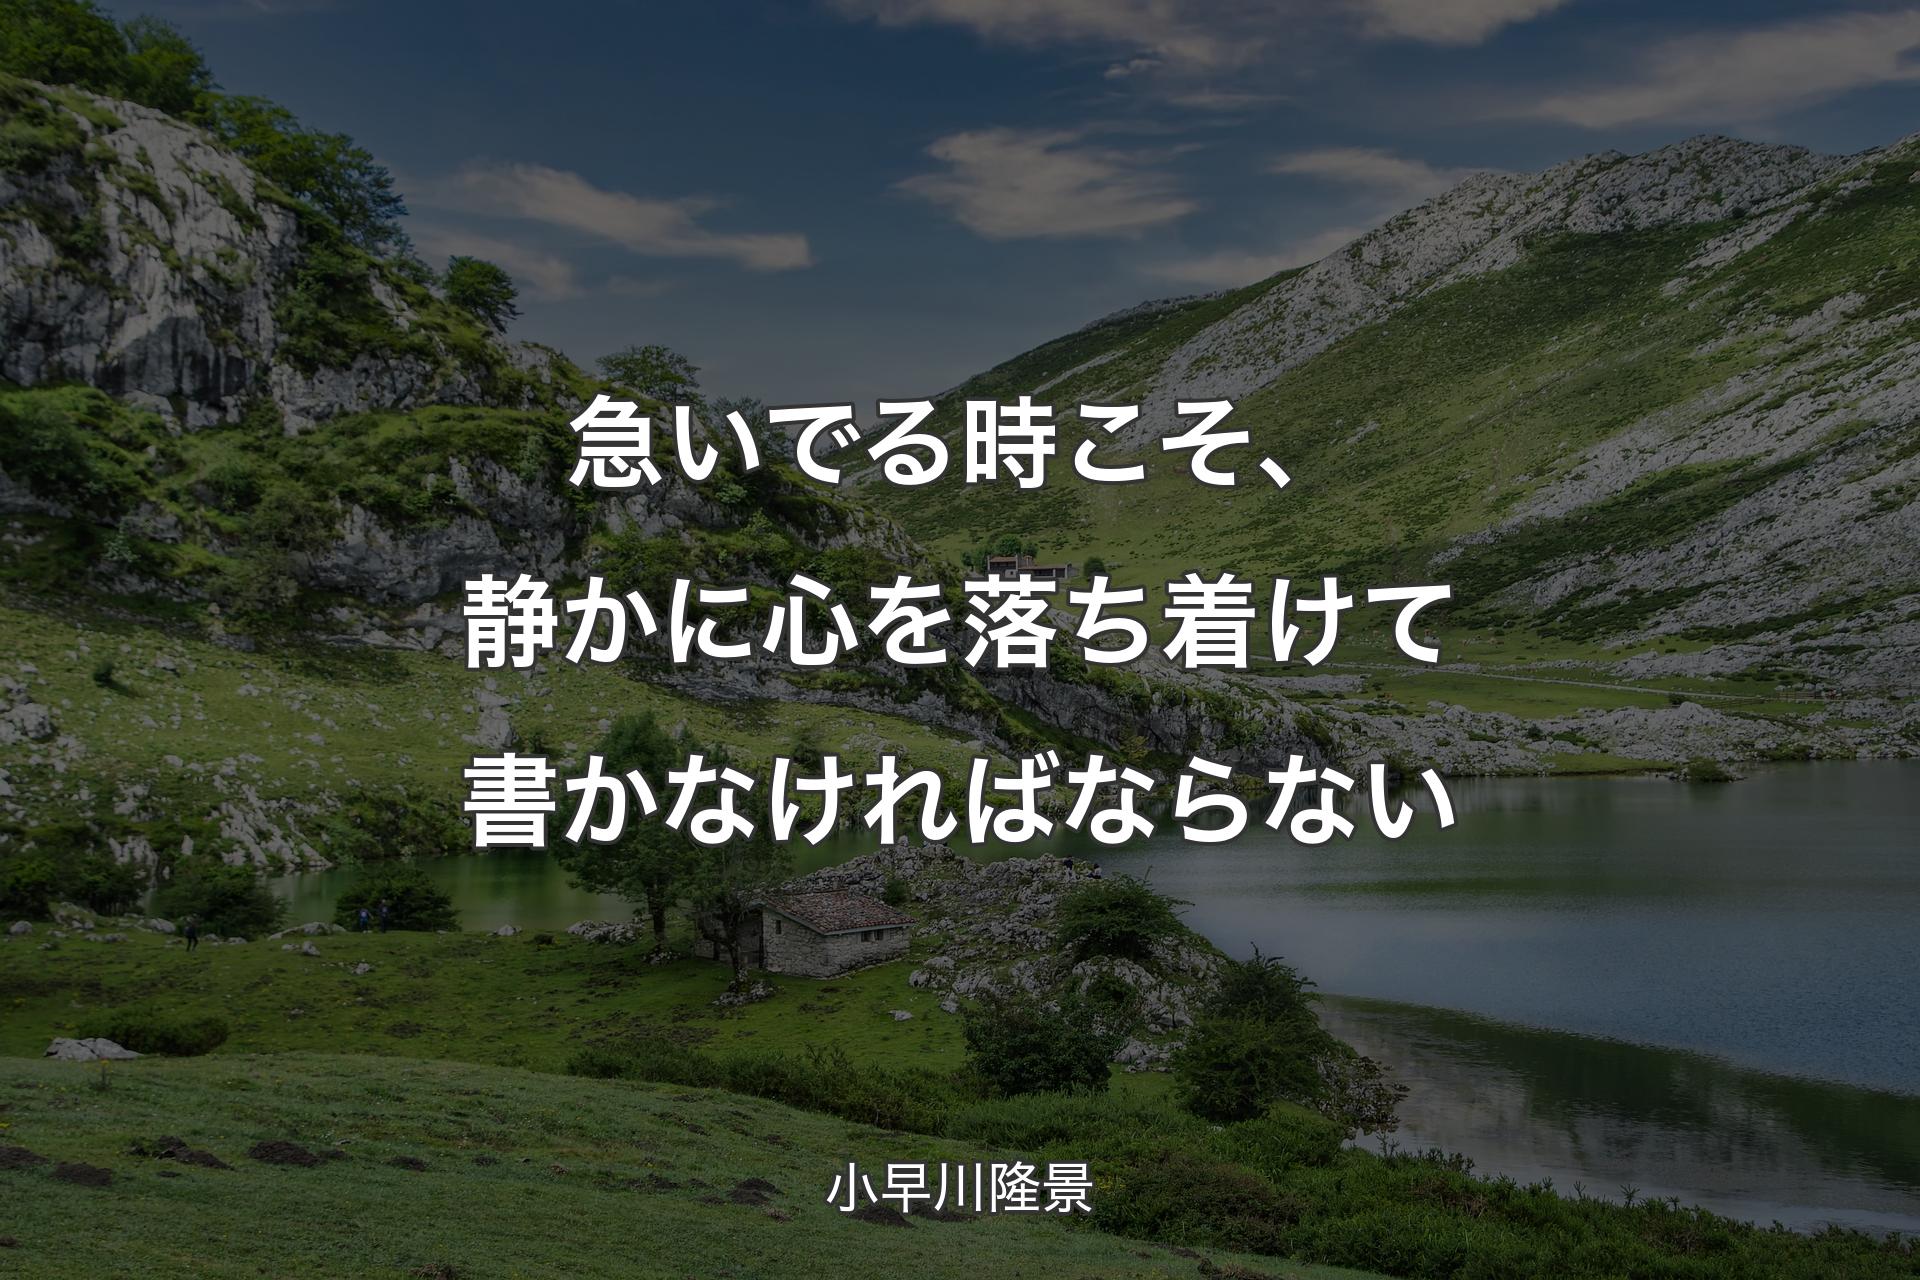 【背景1】急いでる時こそ、静かに心を落ち着けて書かなければならない - 小早川隆景